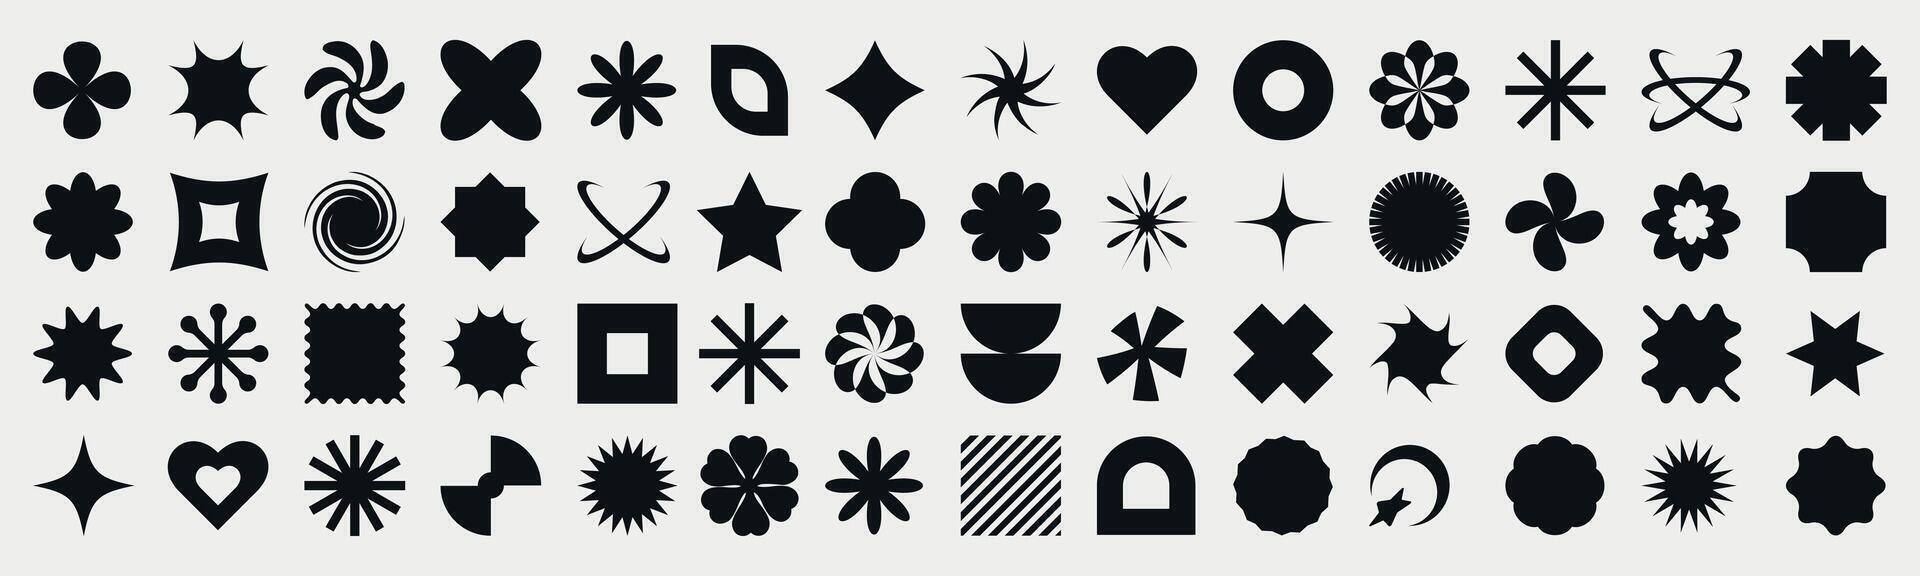 colección de y2k elementos. moderno geométrico formas de brutalismo retro elementos estrella, corazón, círculo, formas para plantillas, web diseño, carteles vector ilustración.